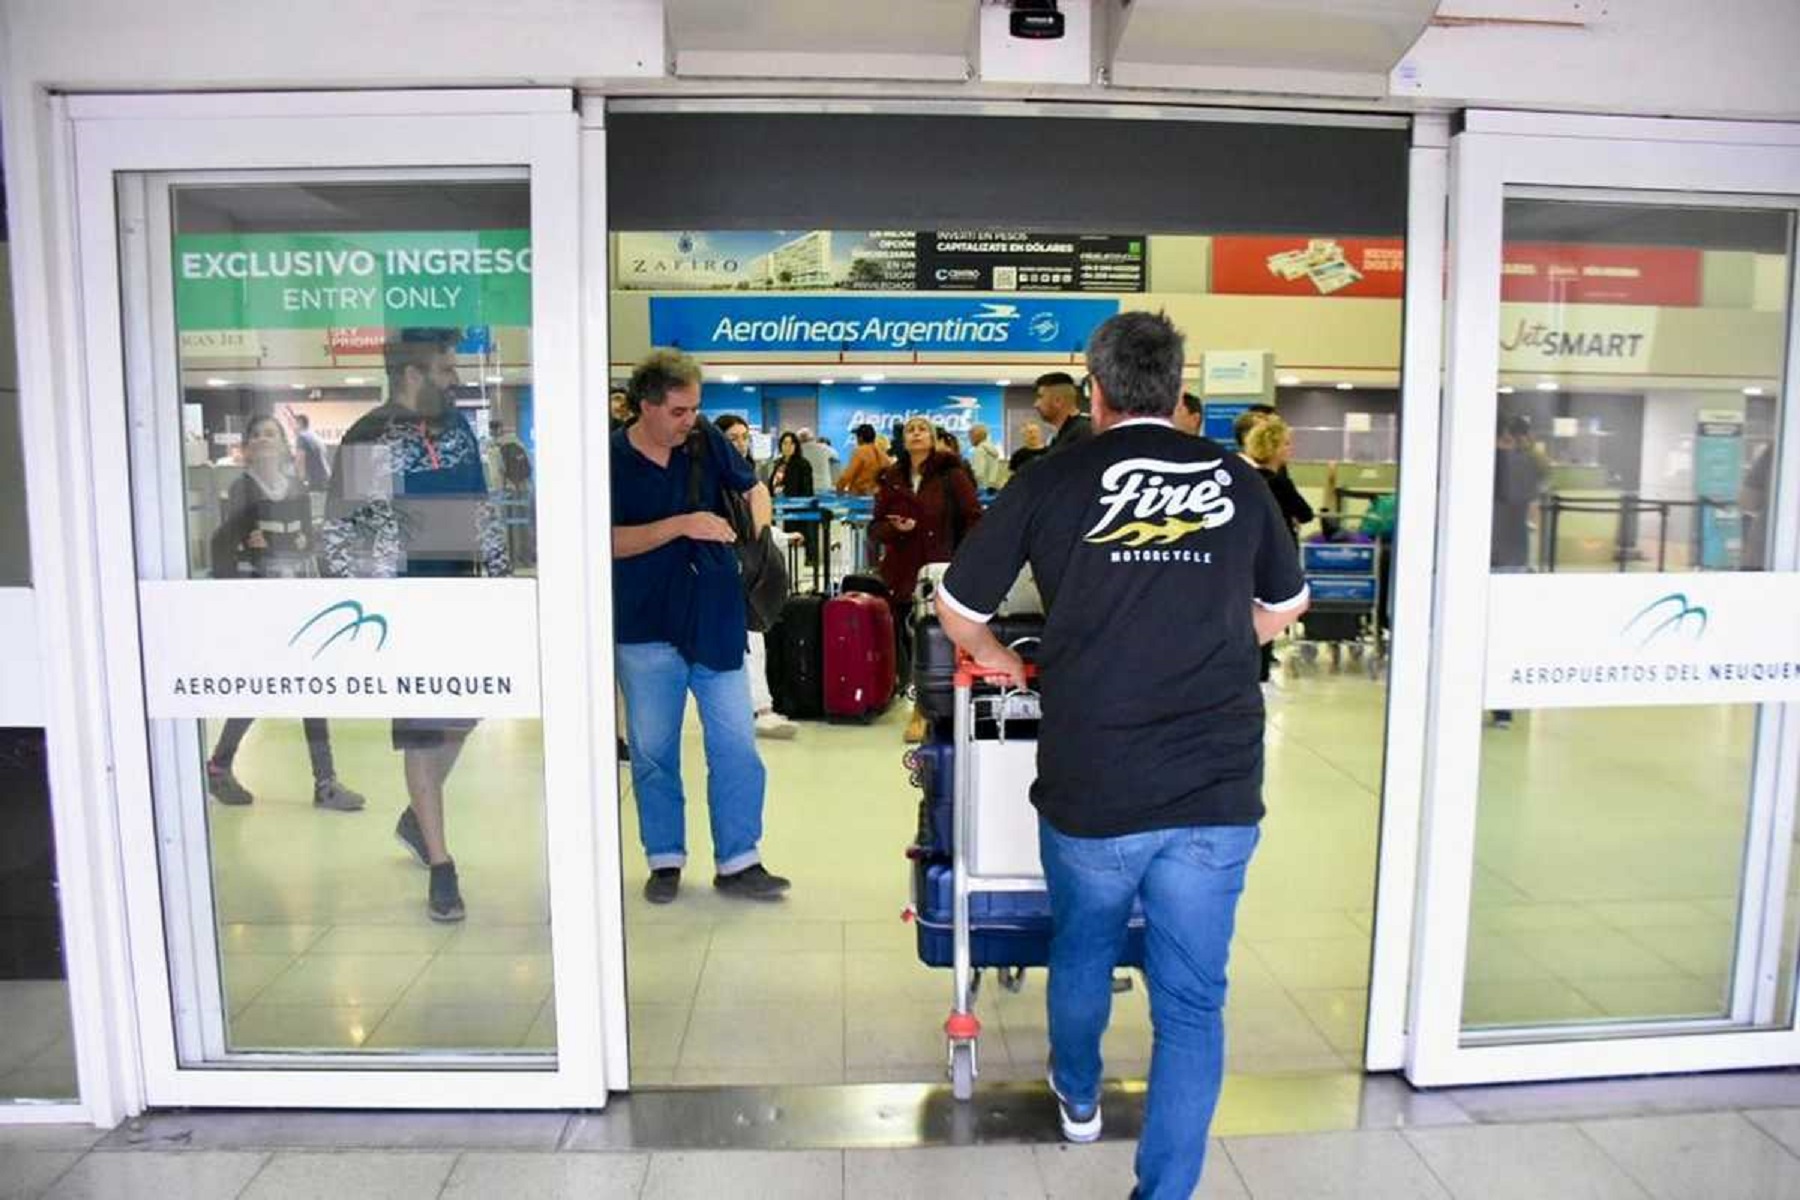 El escáner del Aeropuerto de Neuquén sin funcionar desde enero. Foto: archivo Matias Subat